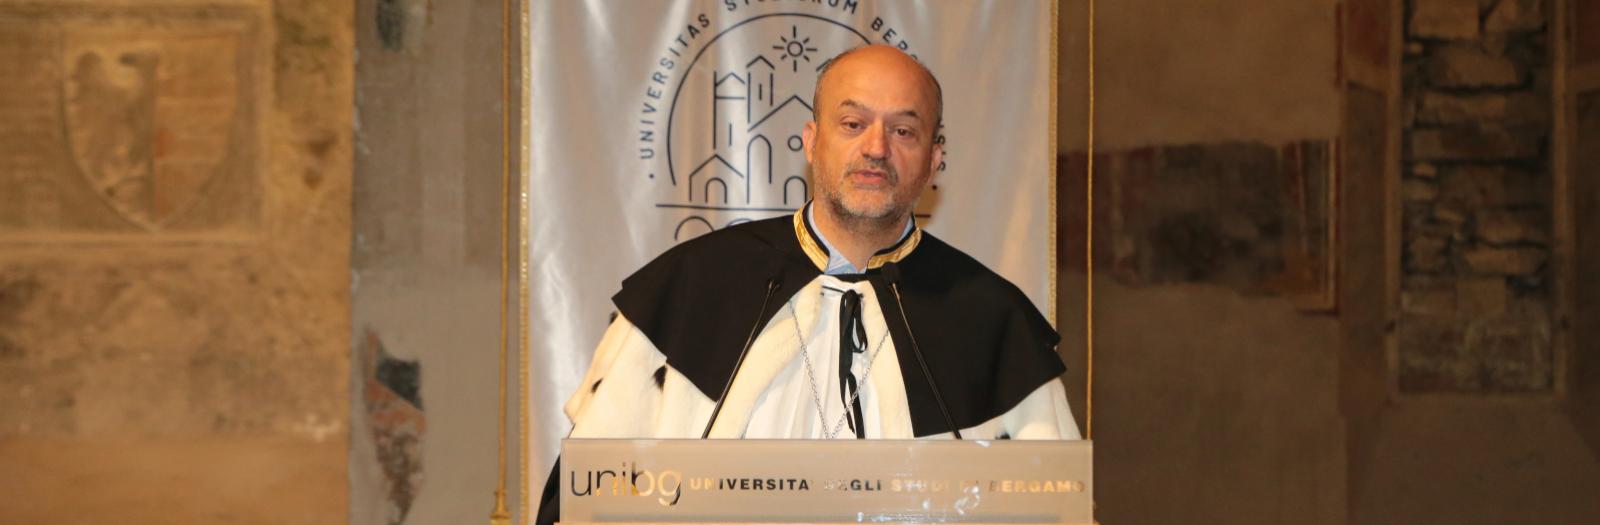 Rector Sergio Cavalieri